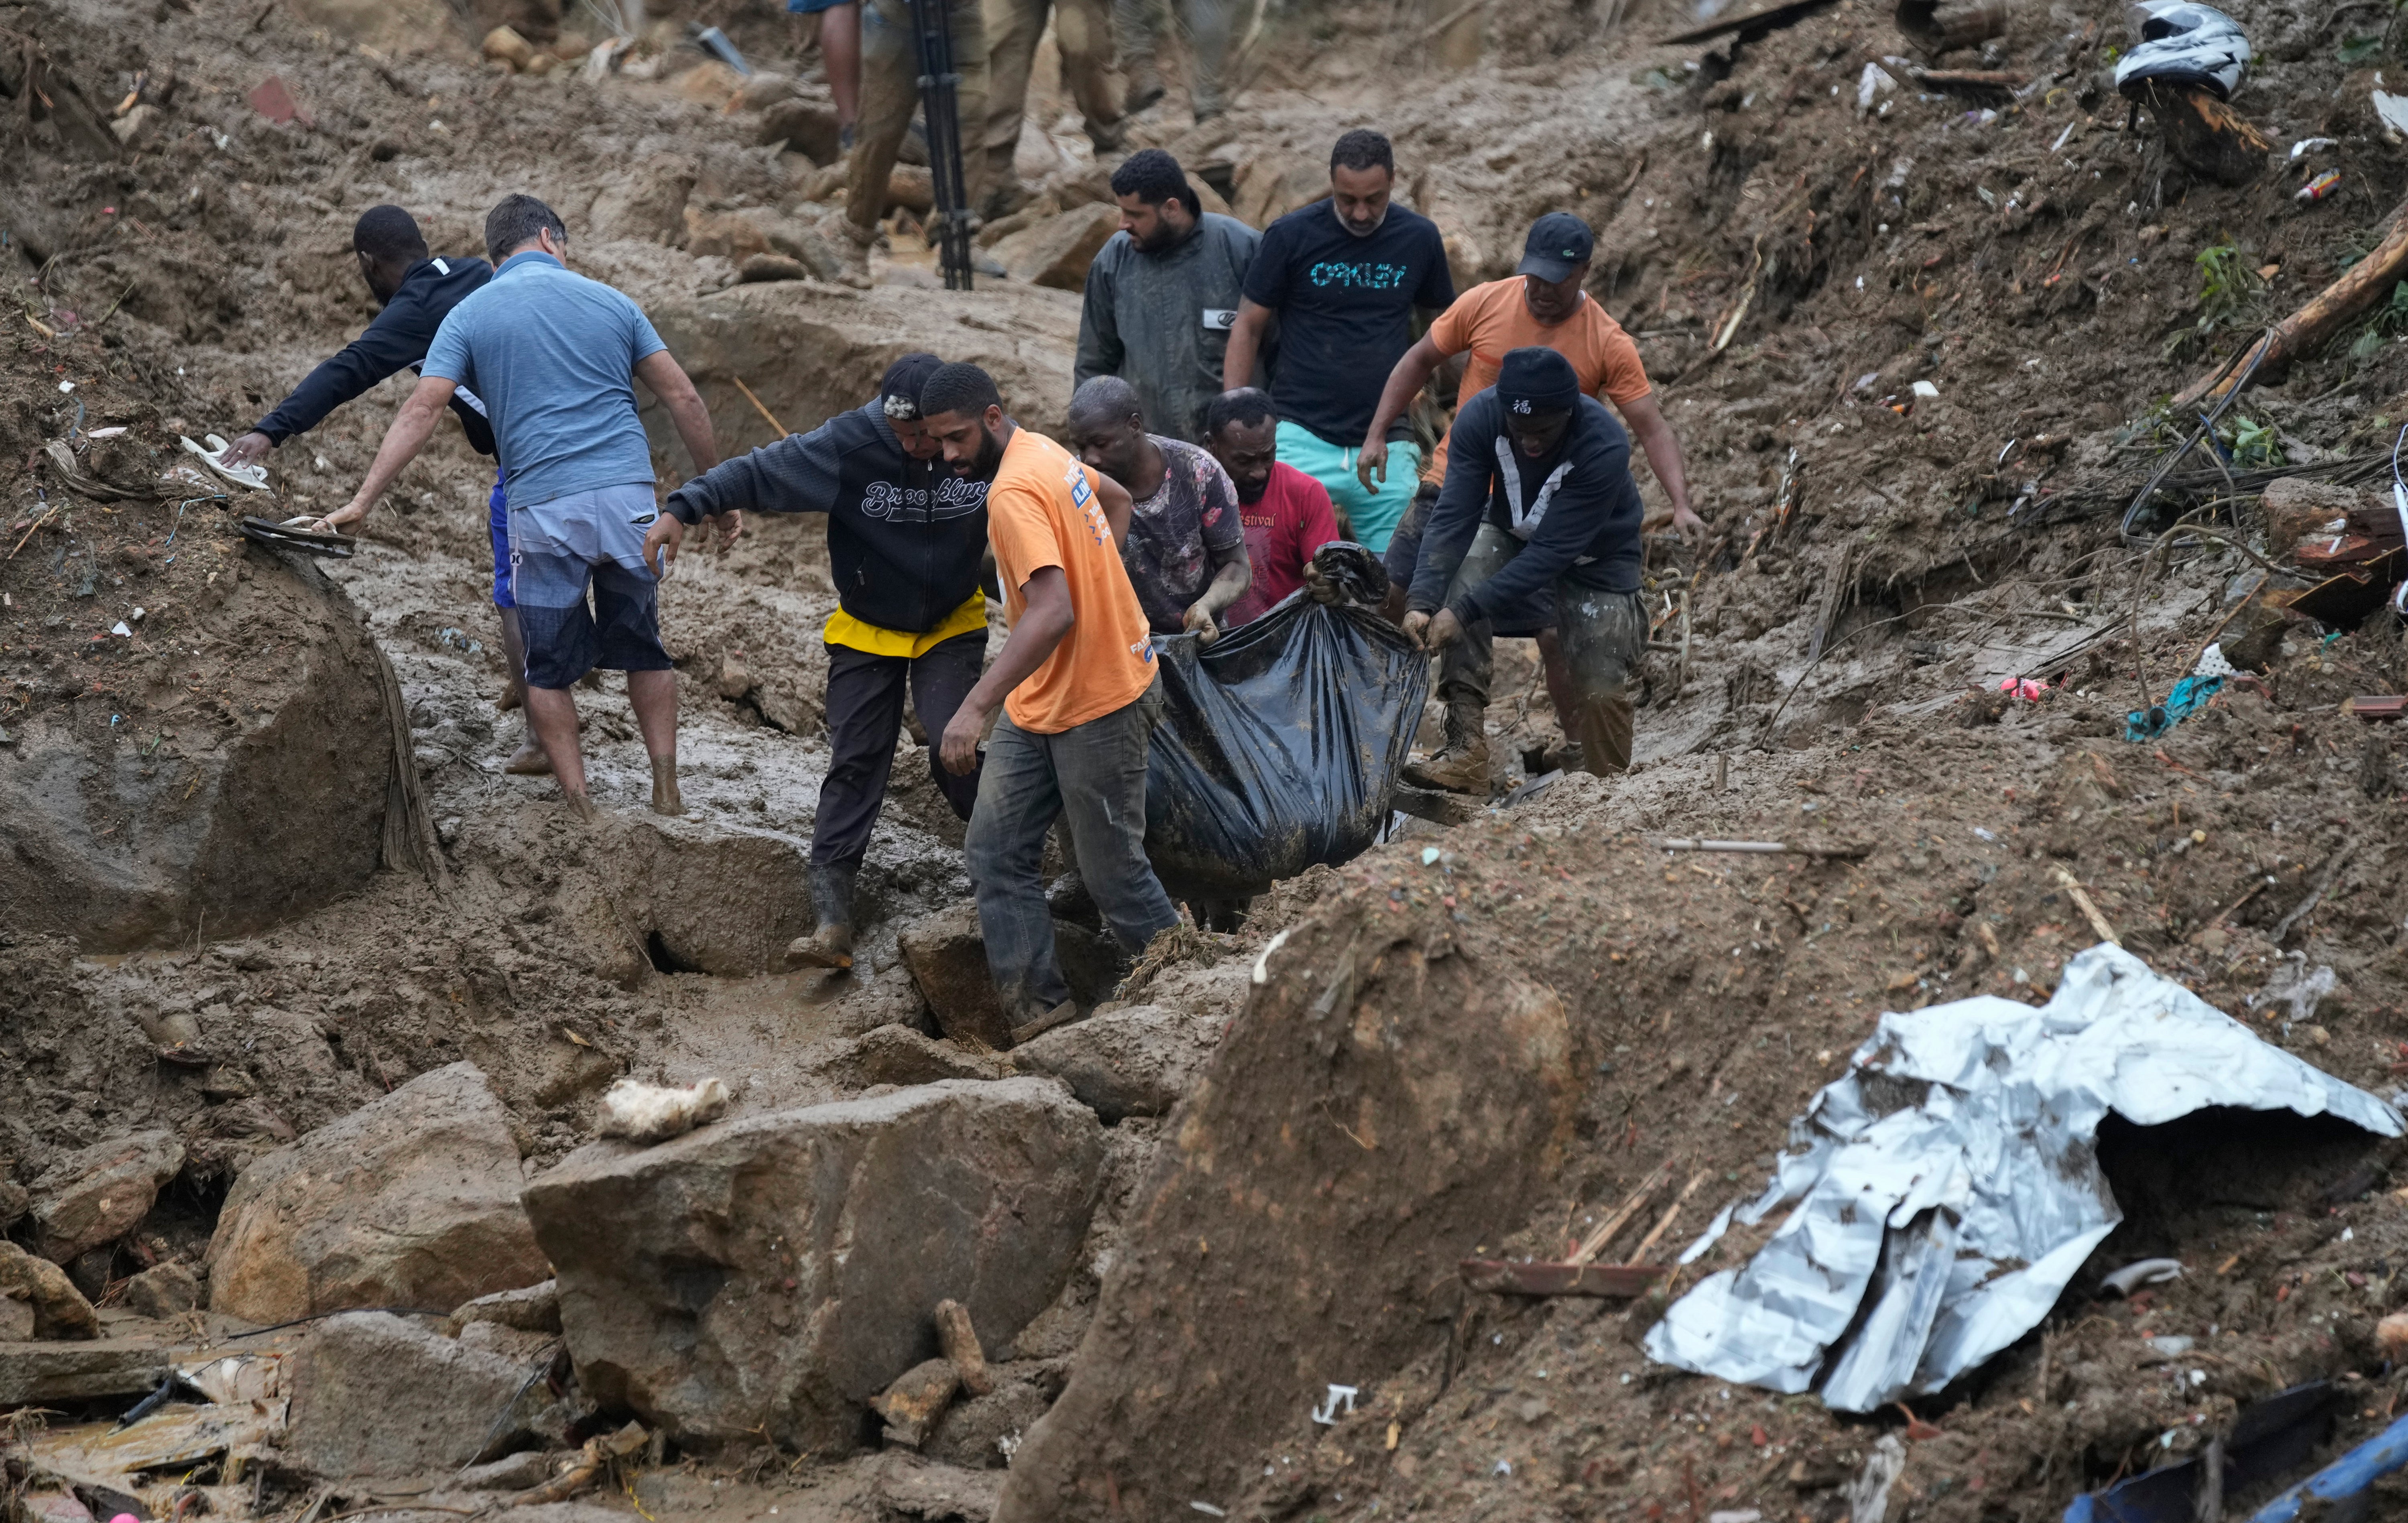 Residentes y voluntarios retiran el cuerpo de una víctima de deslaves en Petrópolis, Brasil. Los deslaves provocaron la muerte de varias personas, informaron las autoridades